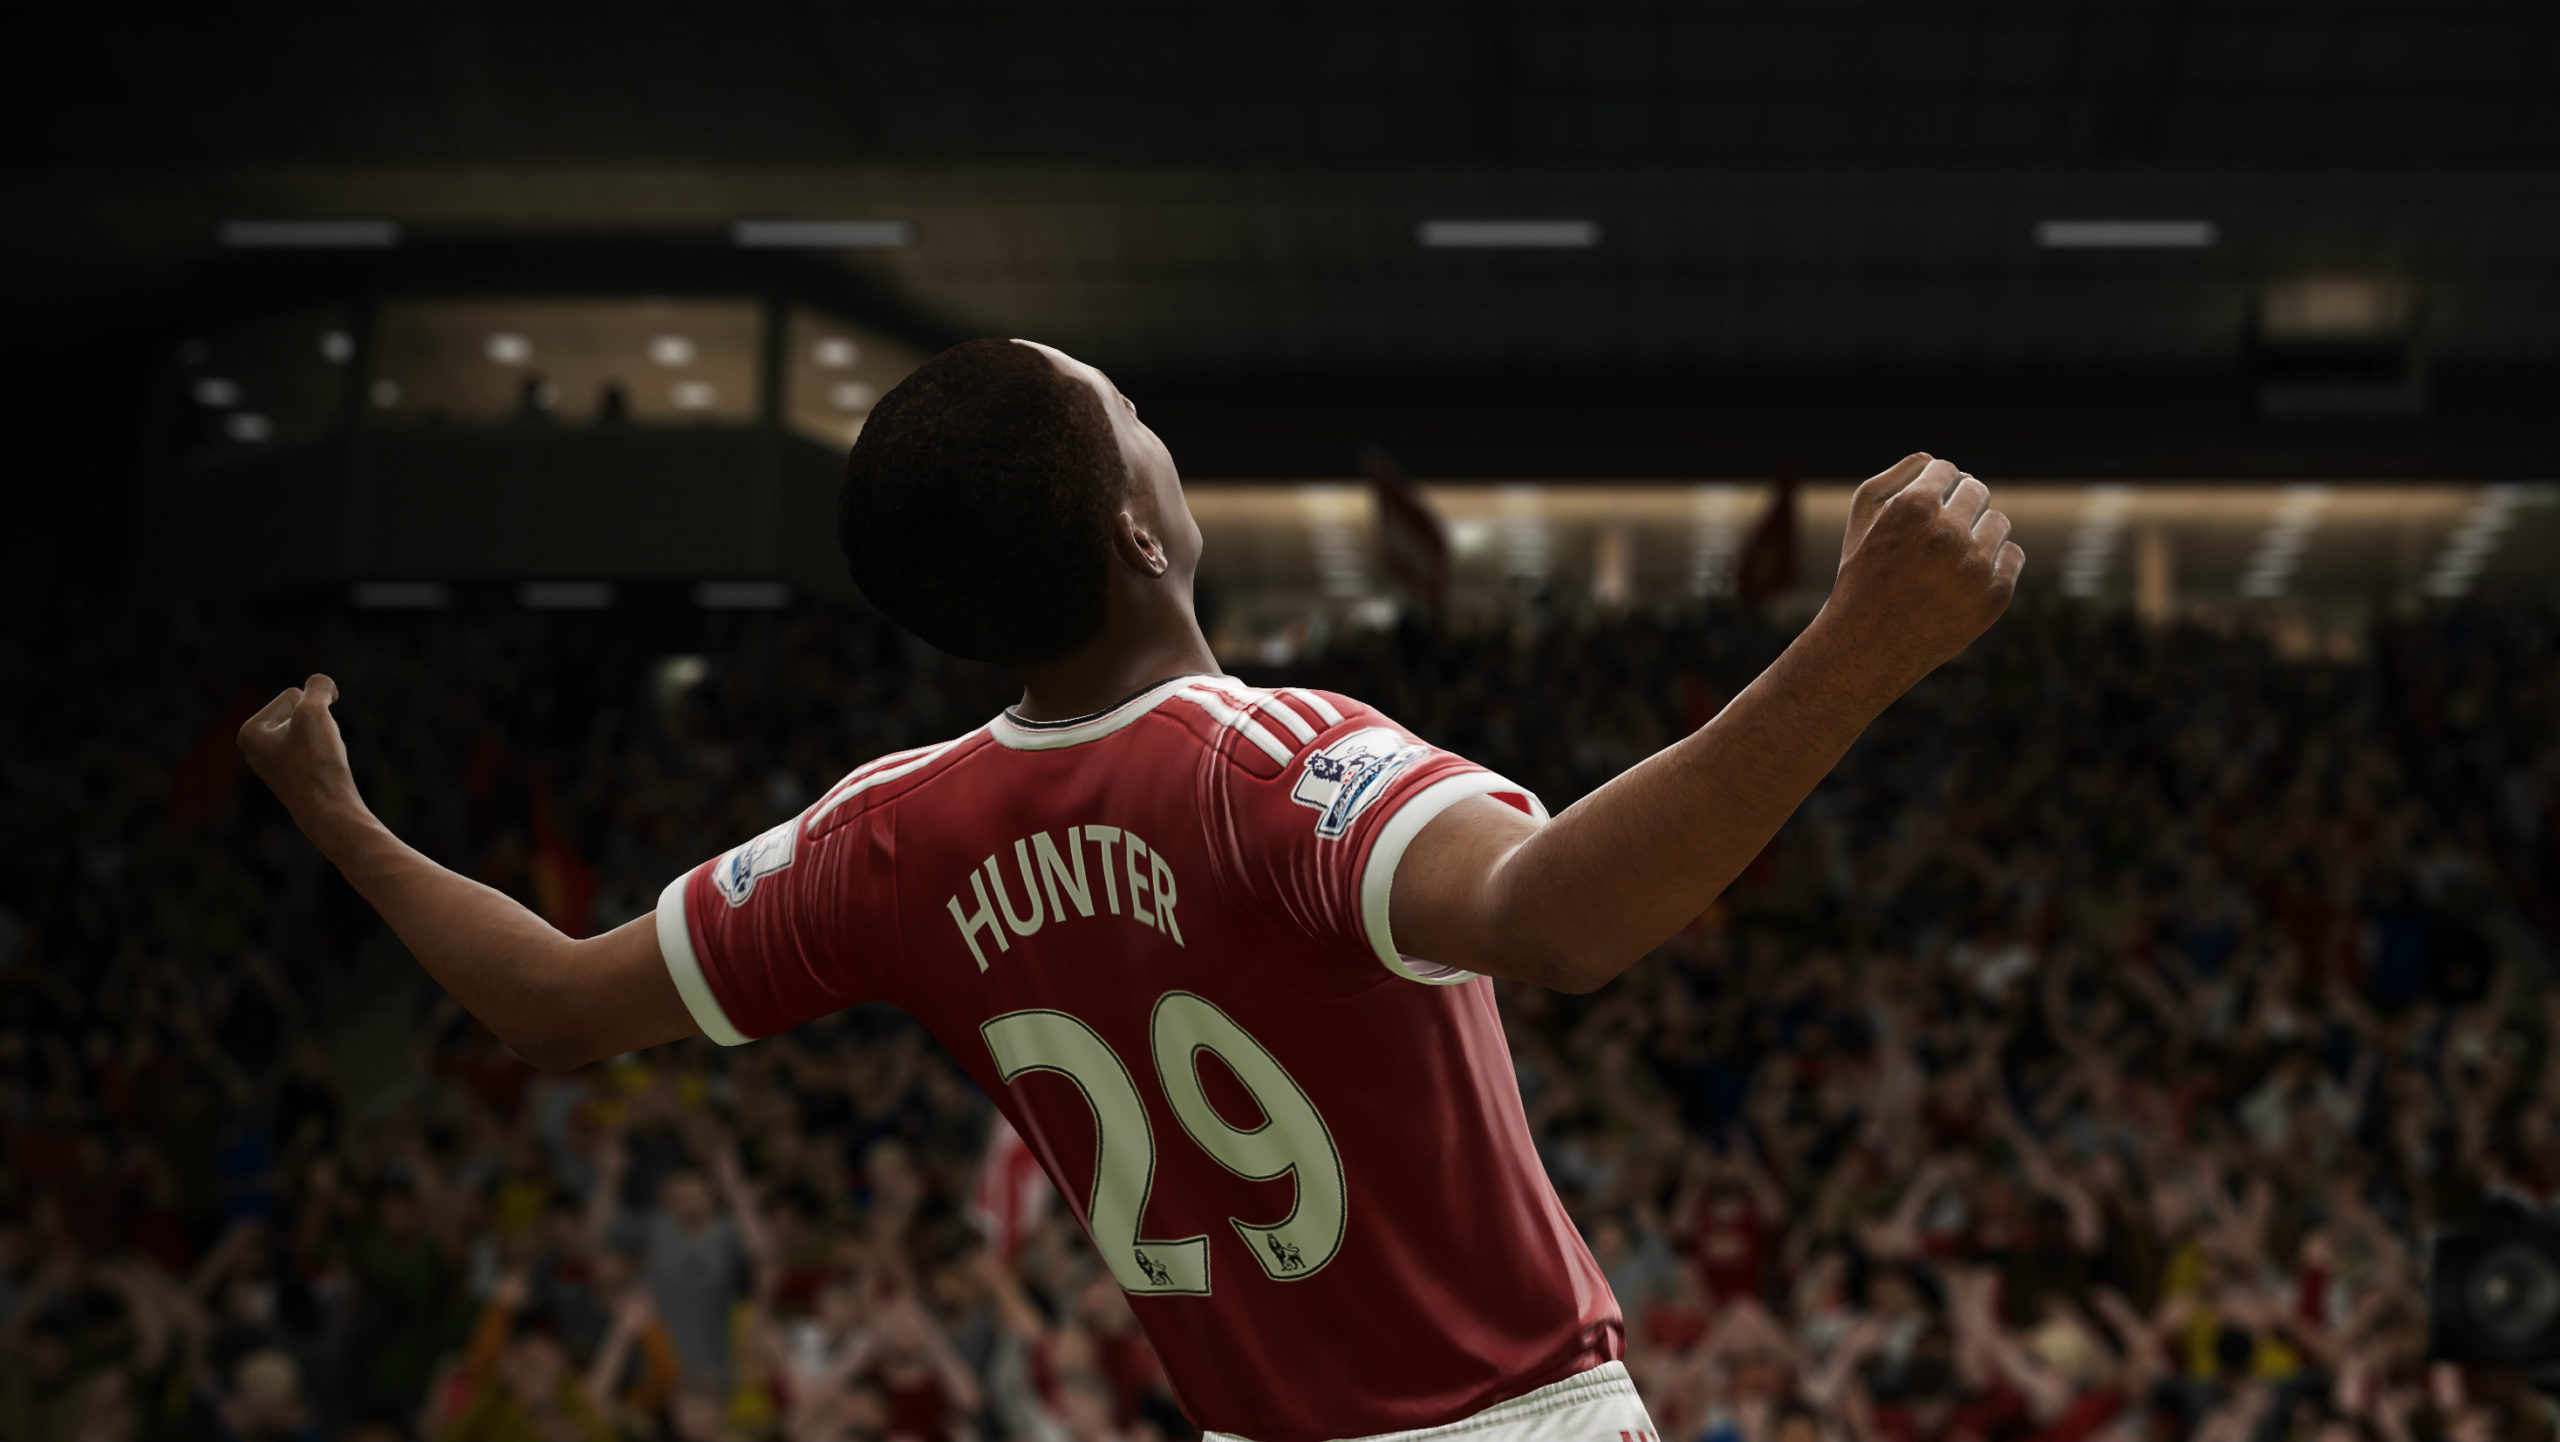 Călătoria din FIFA 17: imperfect, dar EA ar putea avea ceva cu adevărat special dacă rămâne cu el